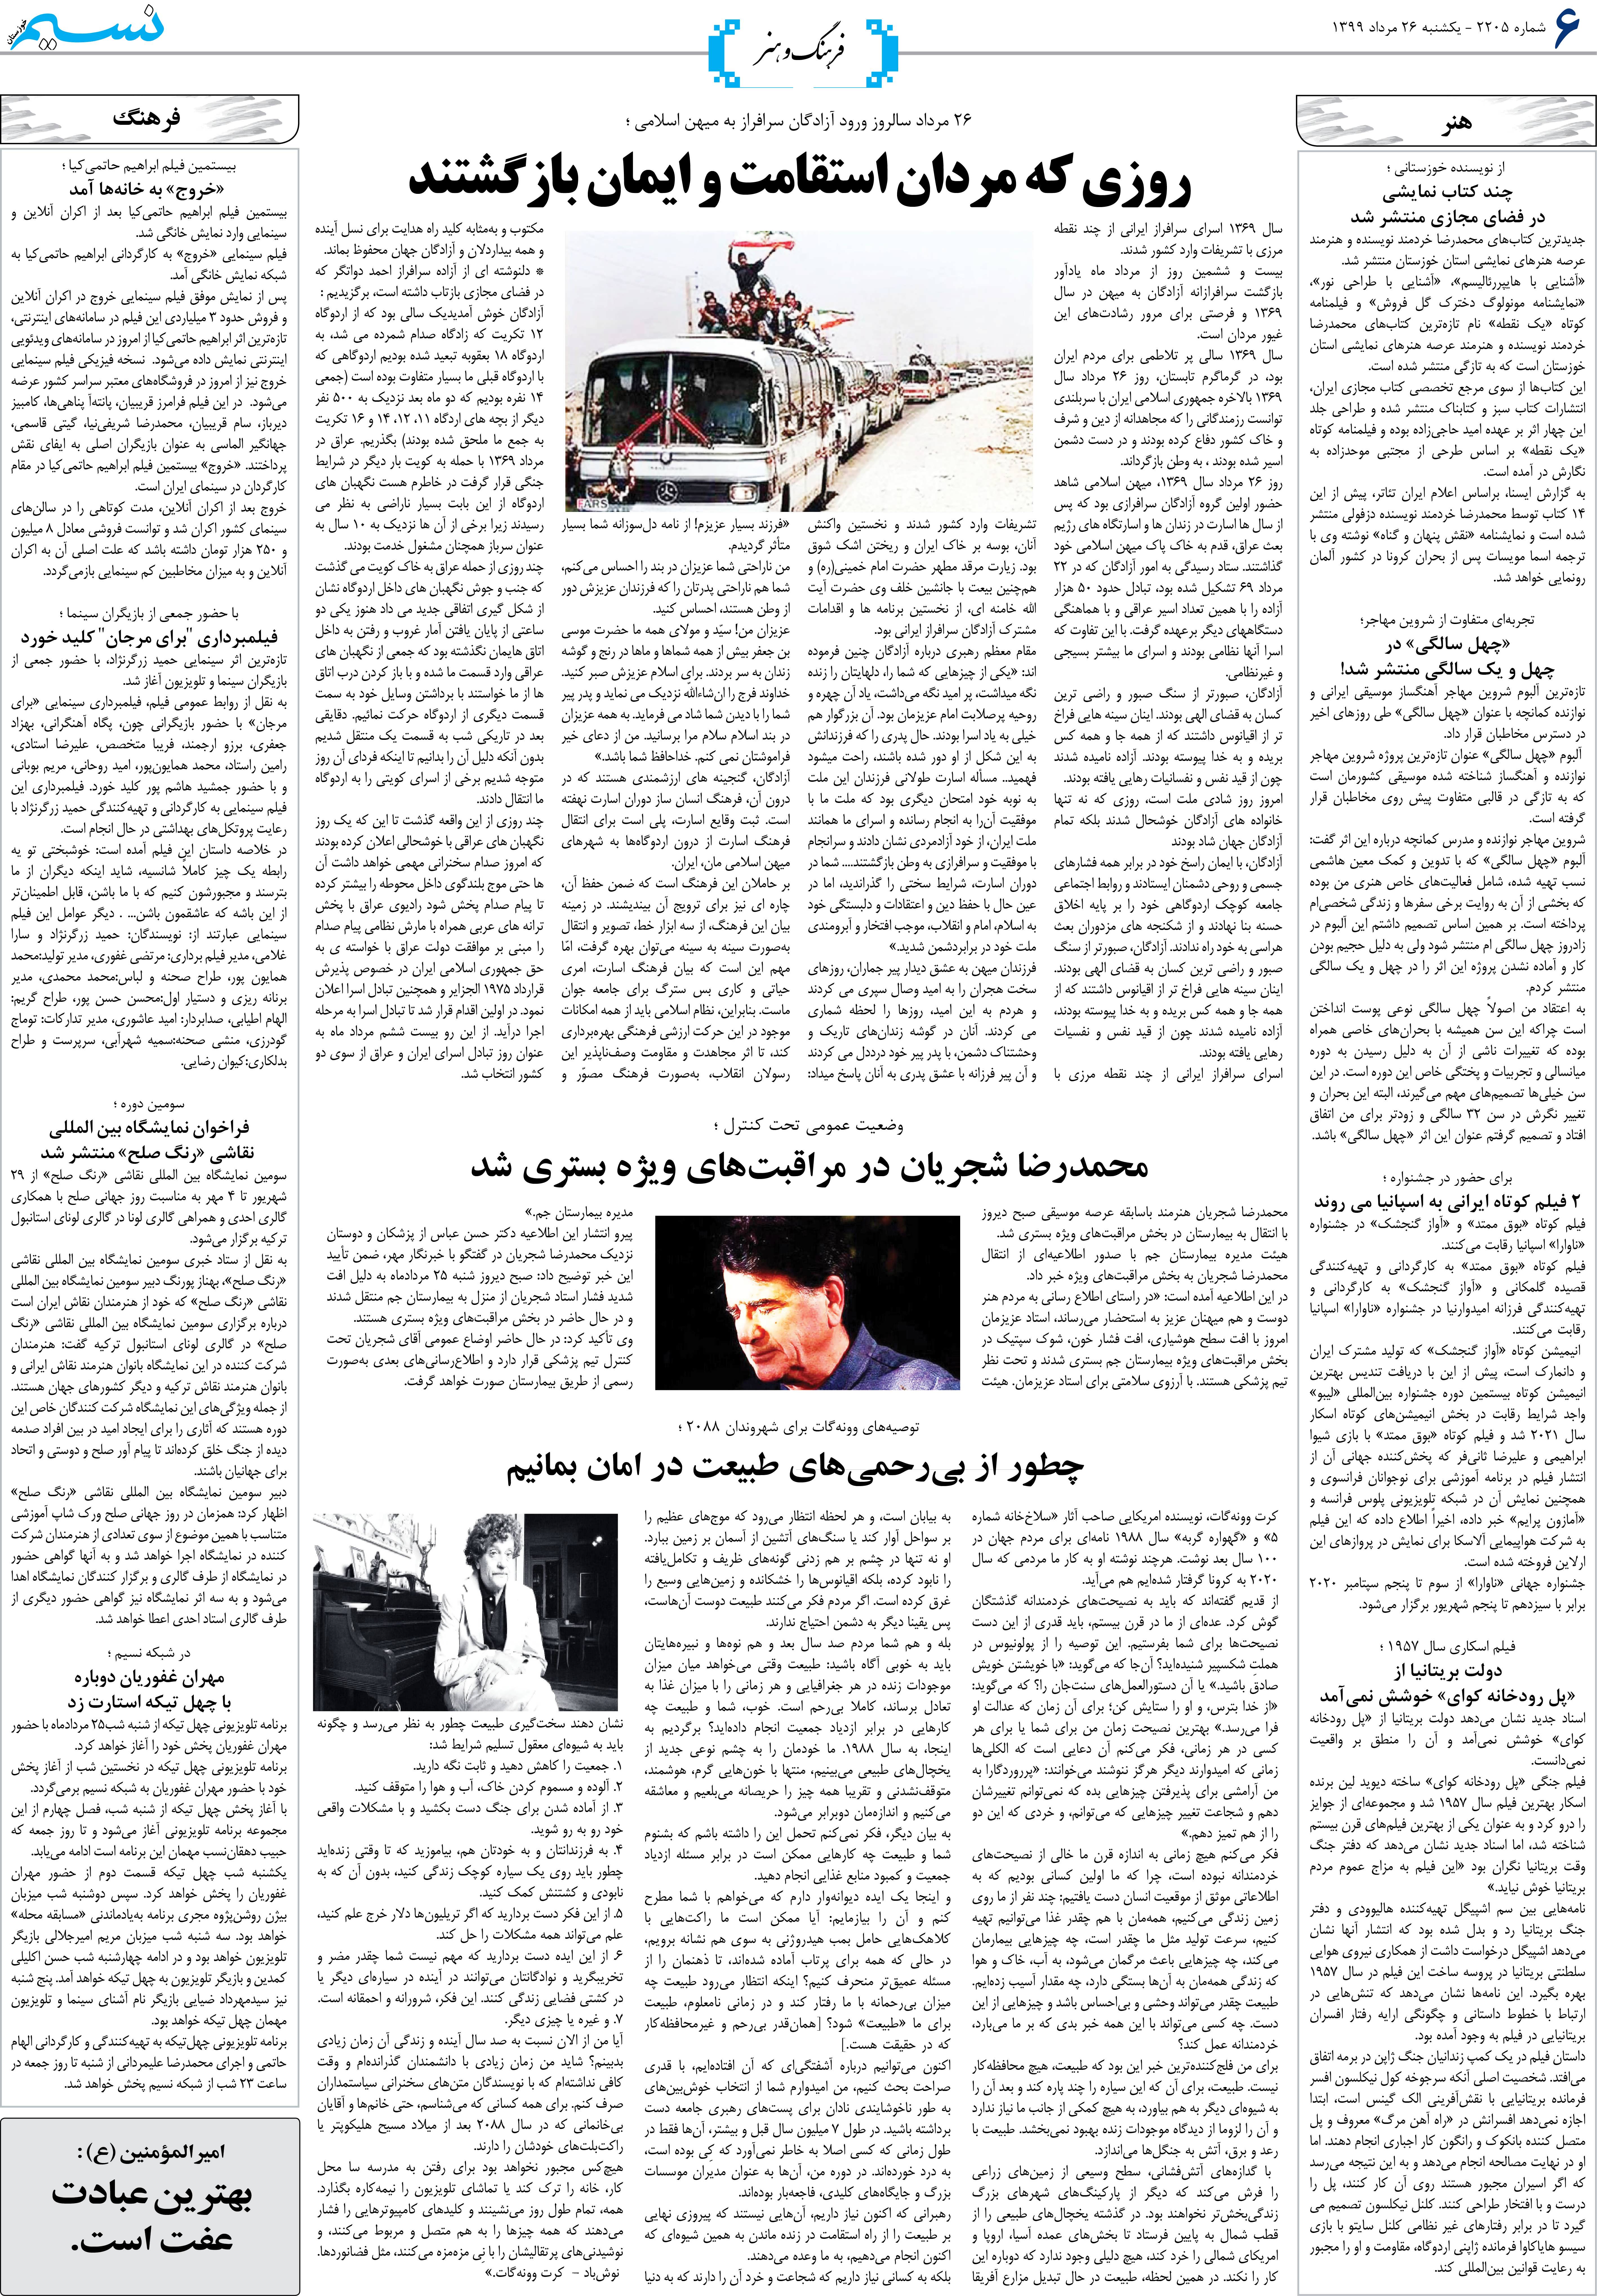 صفحه فرهنگ و هنر روزنامه نسیم شماره 2205